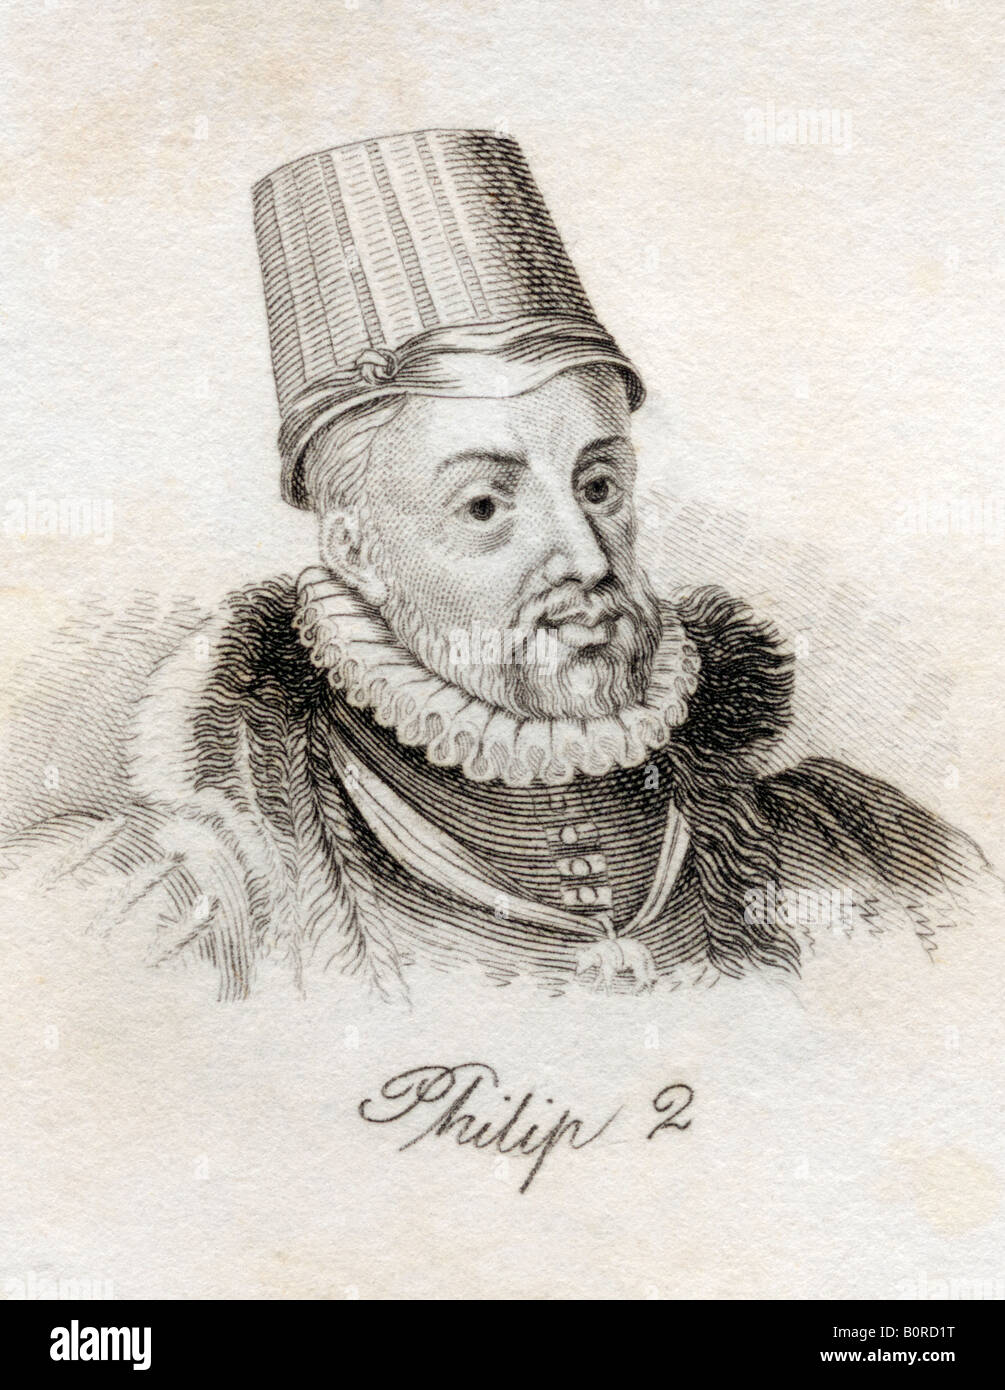 Felipe II, 1527 - 1598. Rey de España, 1556 - 1598, Felipe II de España. Del libro Crabbs Historical Dictionary, publicado en 1825. Foto de stock